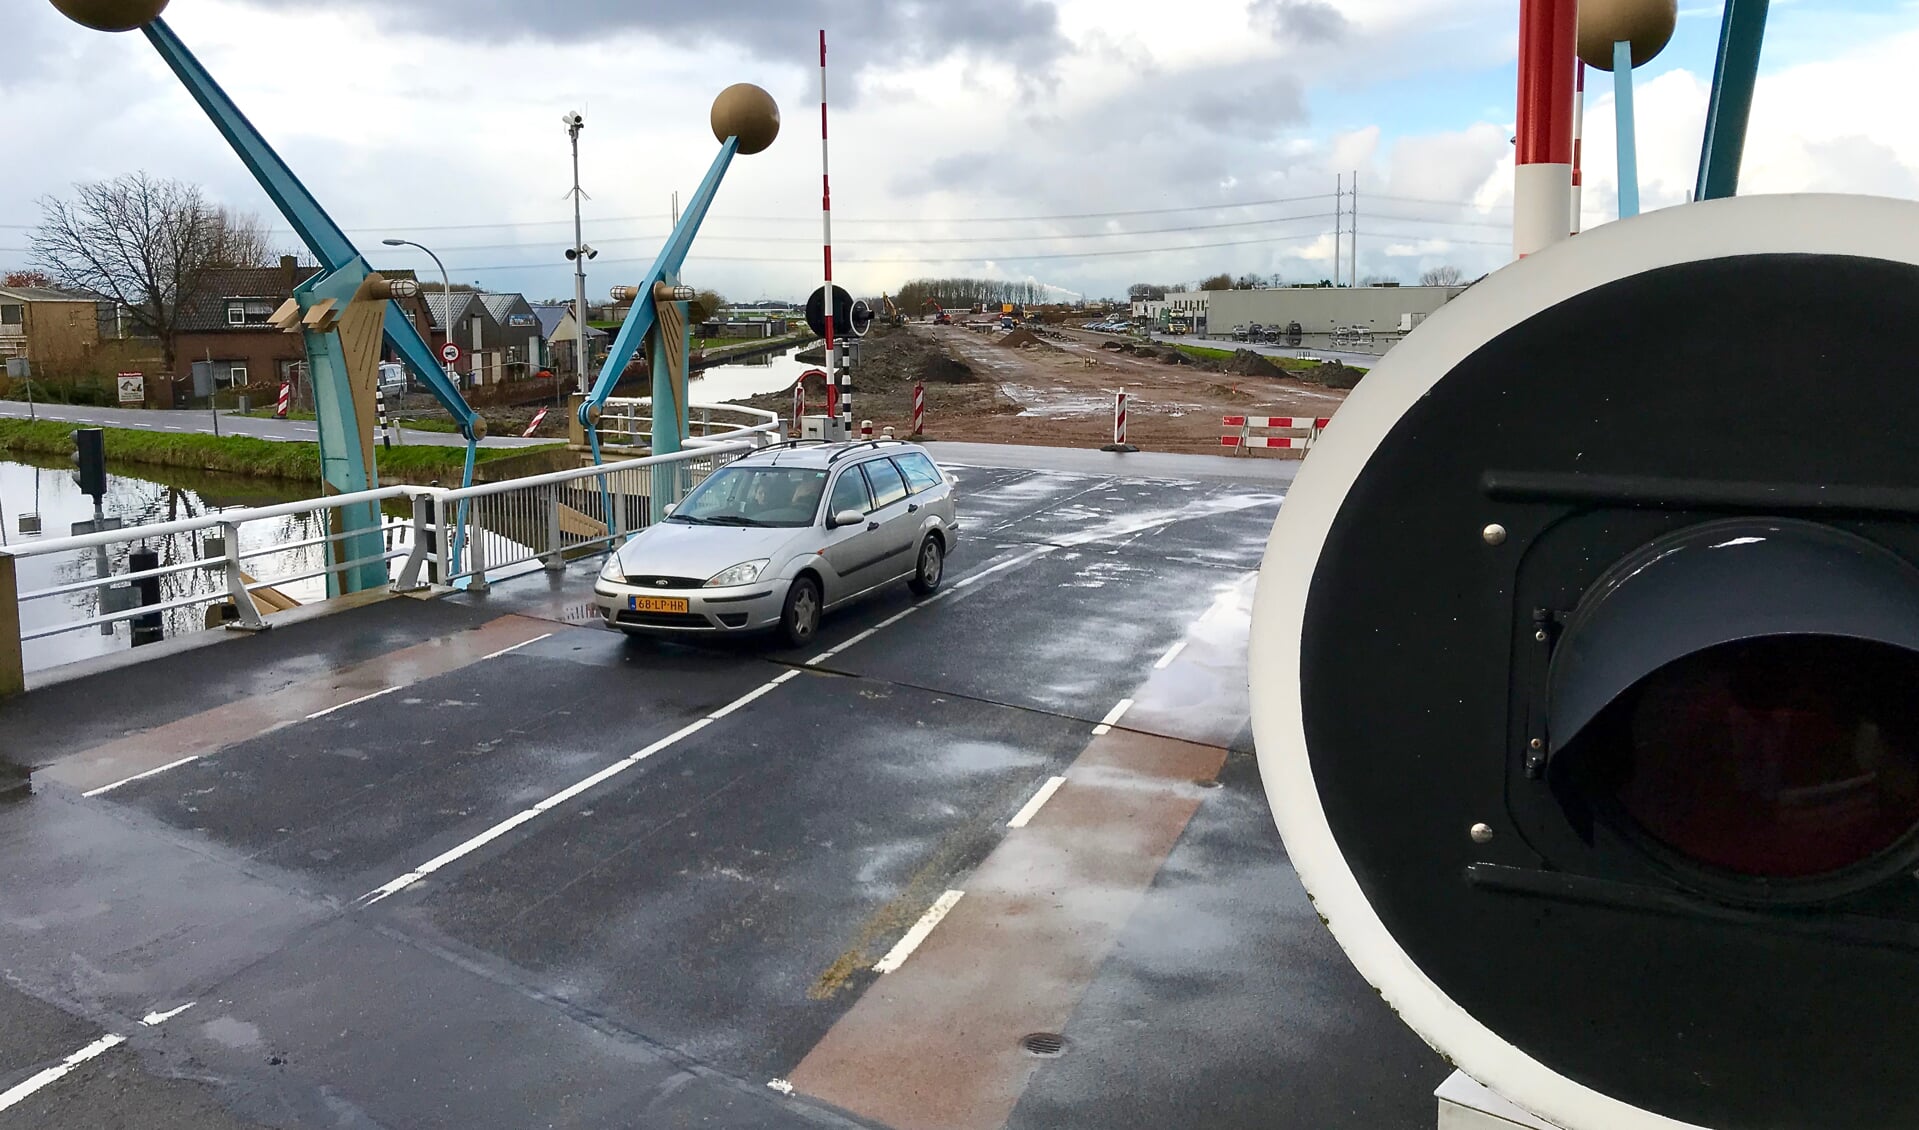 Binnenkort wordt de Oostgaagbrug verbreed, als schakel in een nieuwe weg (op de achtergrond in aanleg) tussen het Delftse ziekenhuis en de A4 bij Den Hoorn. (foto: Henk de Kat)